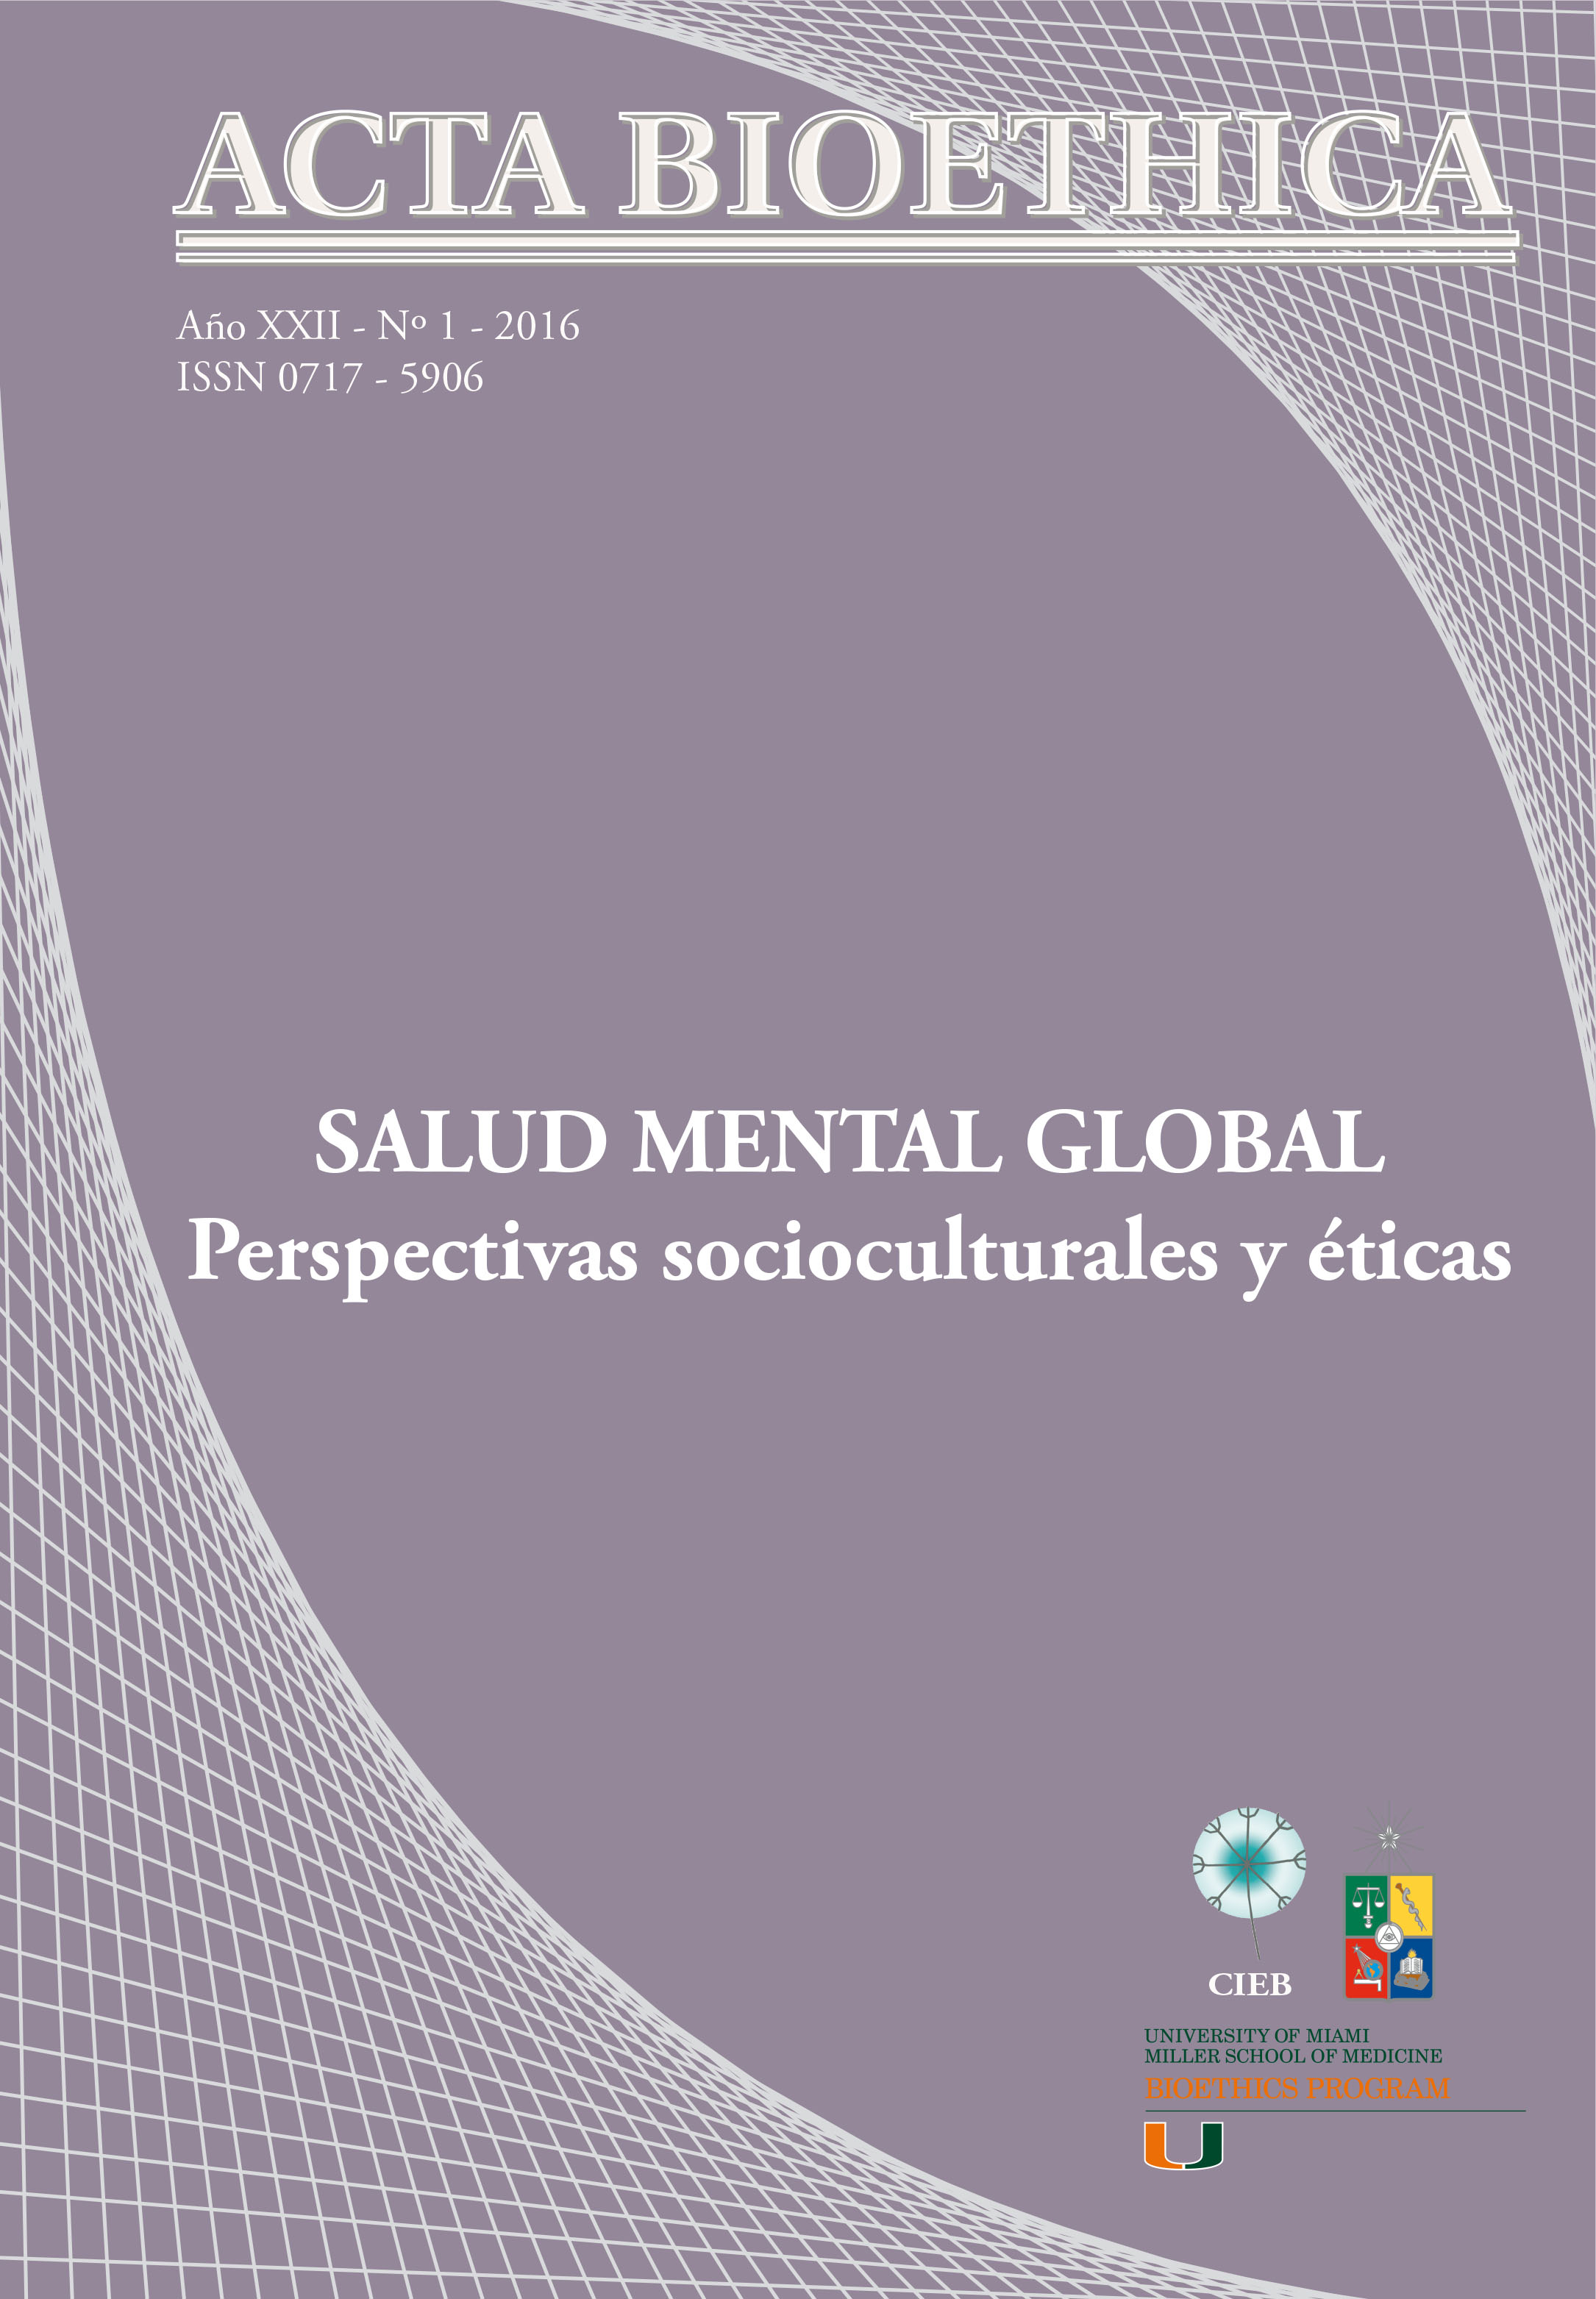 												View Vol. 22 No. 1 (2016): Salud Mental Global: perspectivas socioculturales y éticas
											